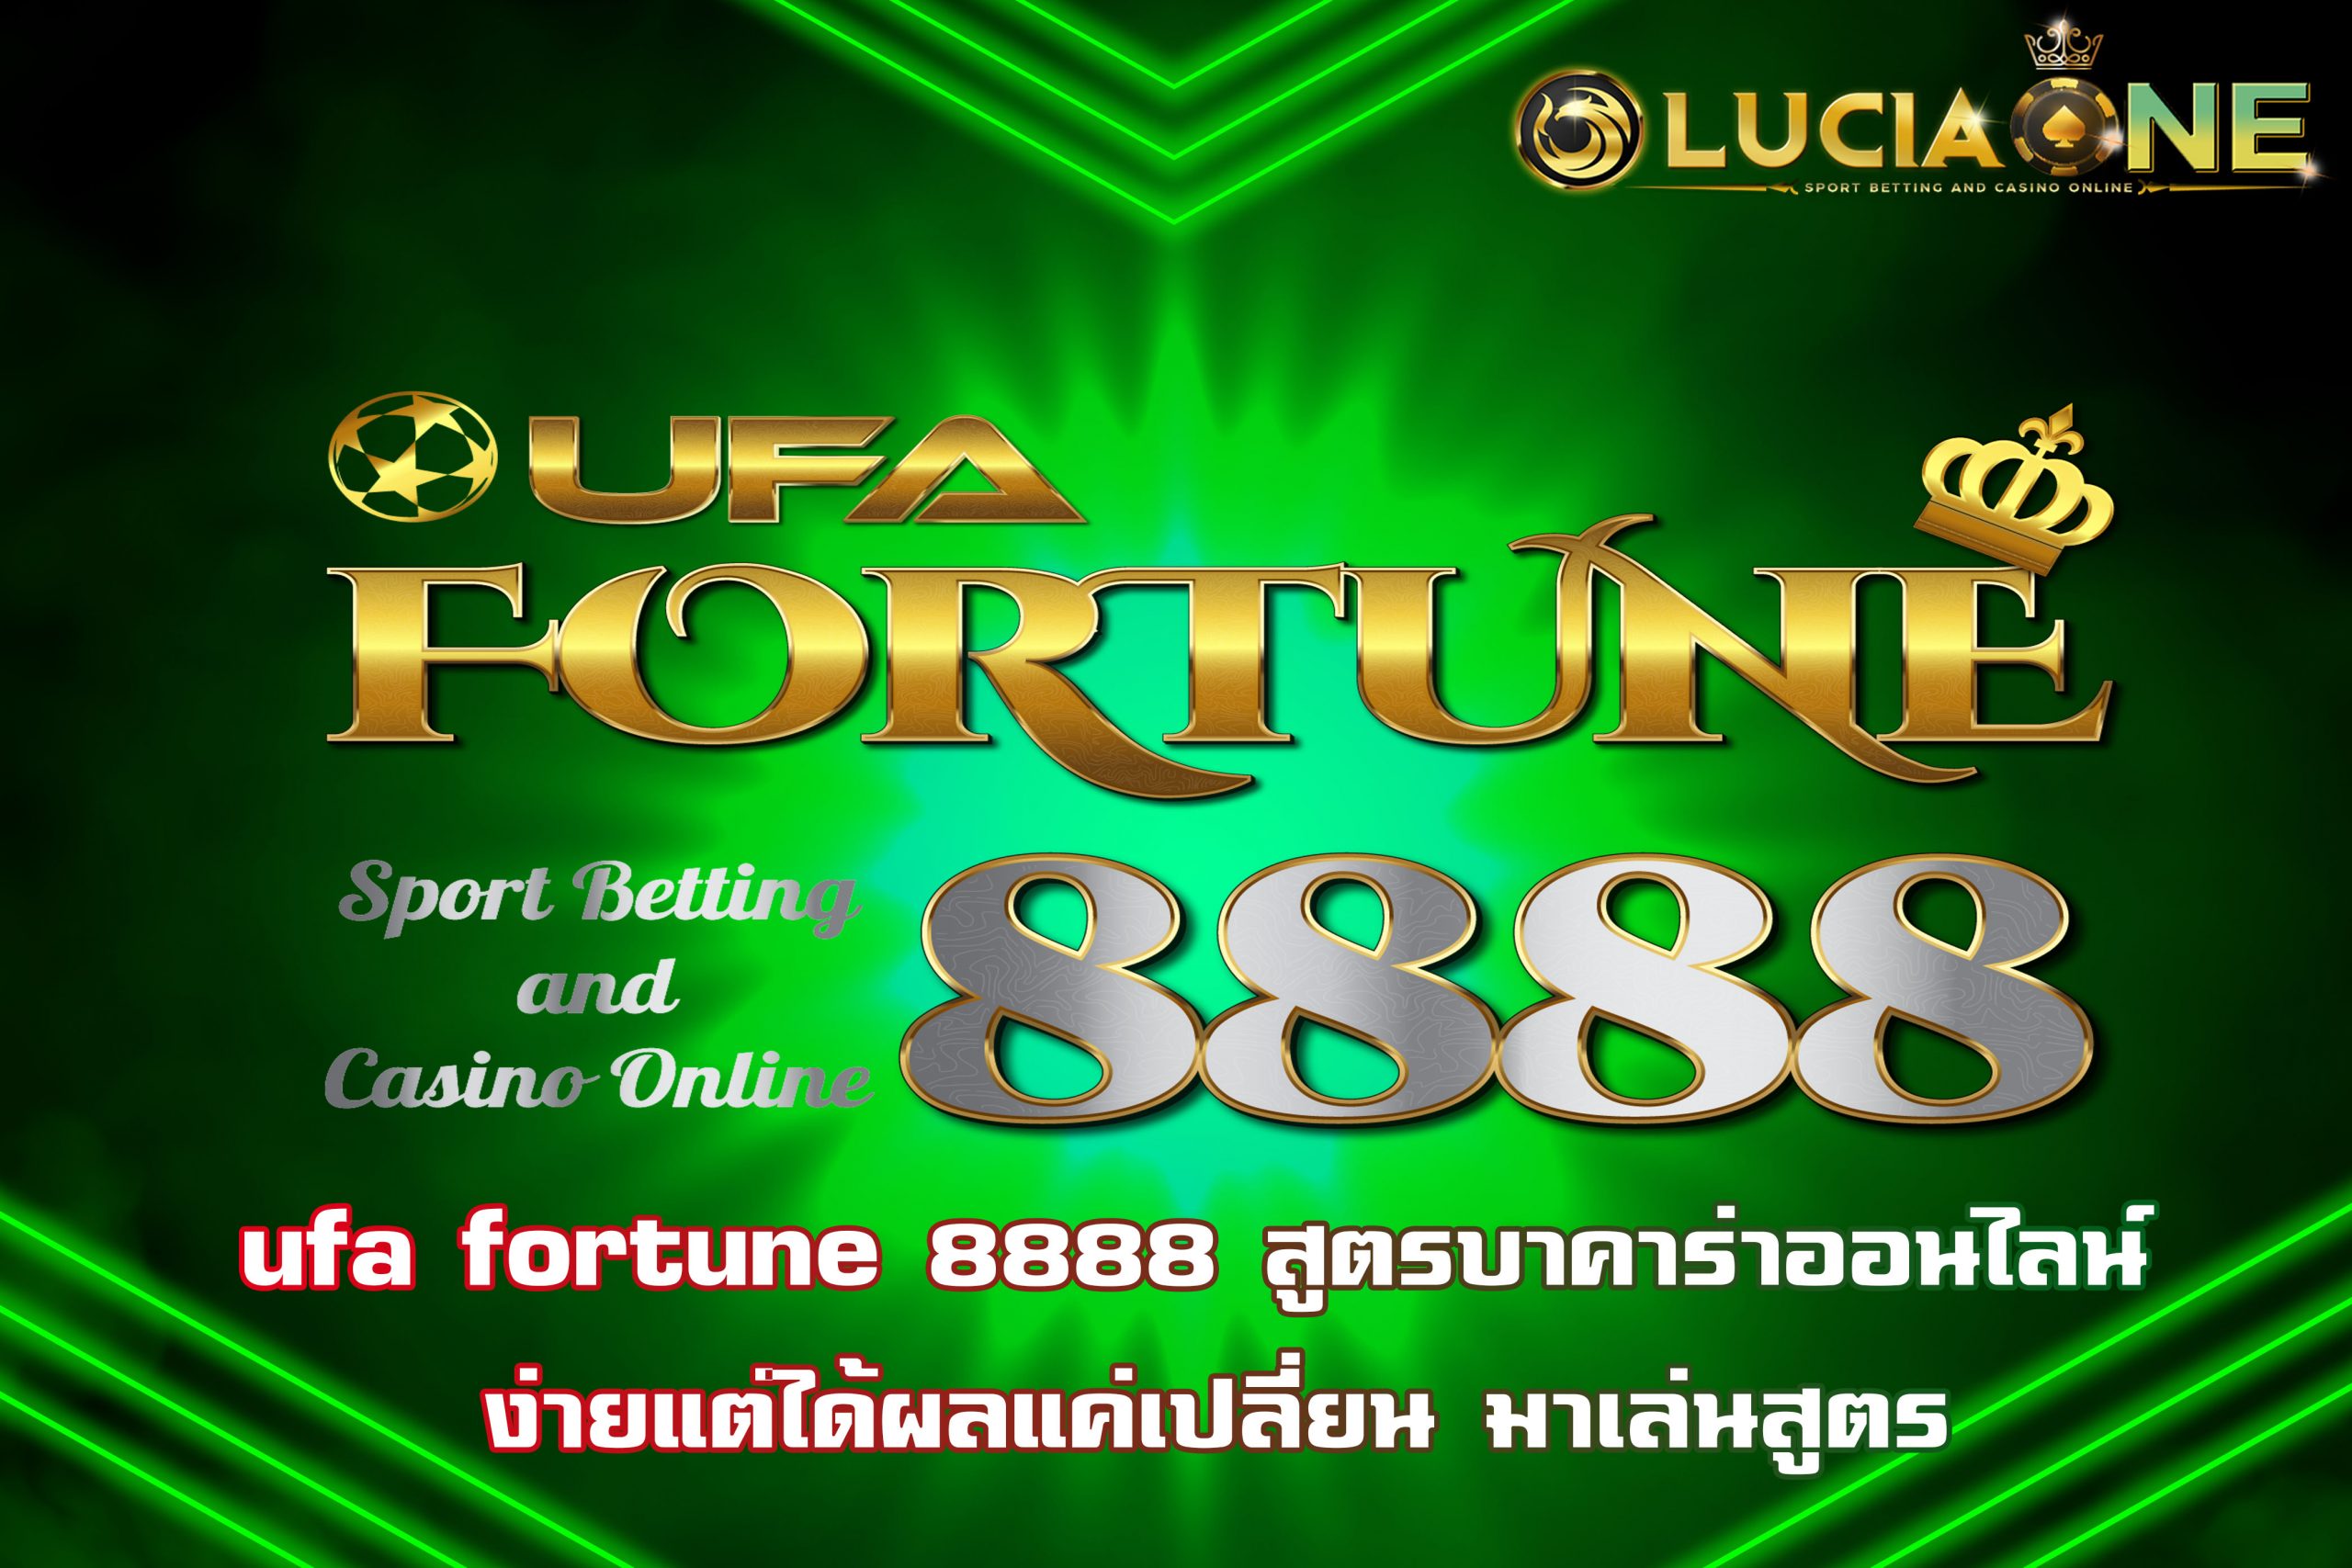 ufa fortune 8888 สูตรบาคาร่าออนไลน์ ง่ายแต่ได้ผลแค่เปลี่ยน มาเล่นสูตร